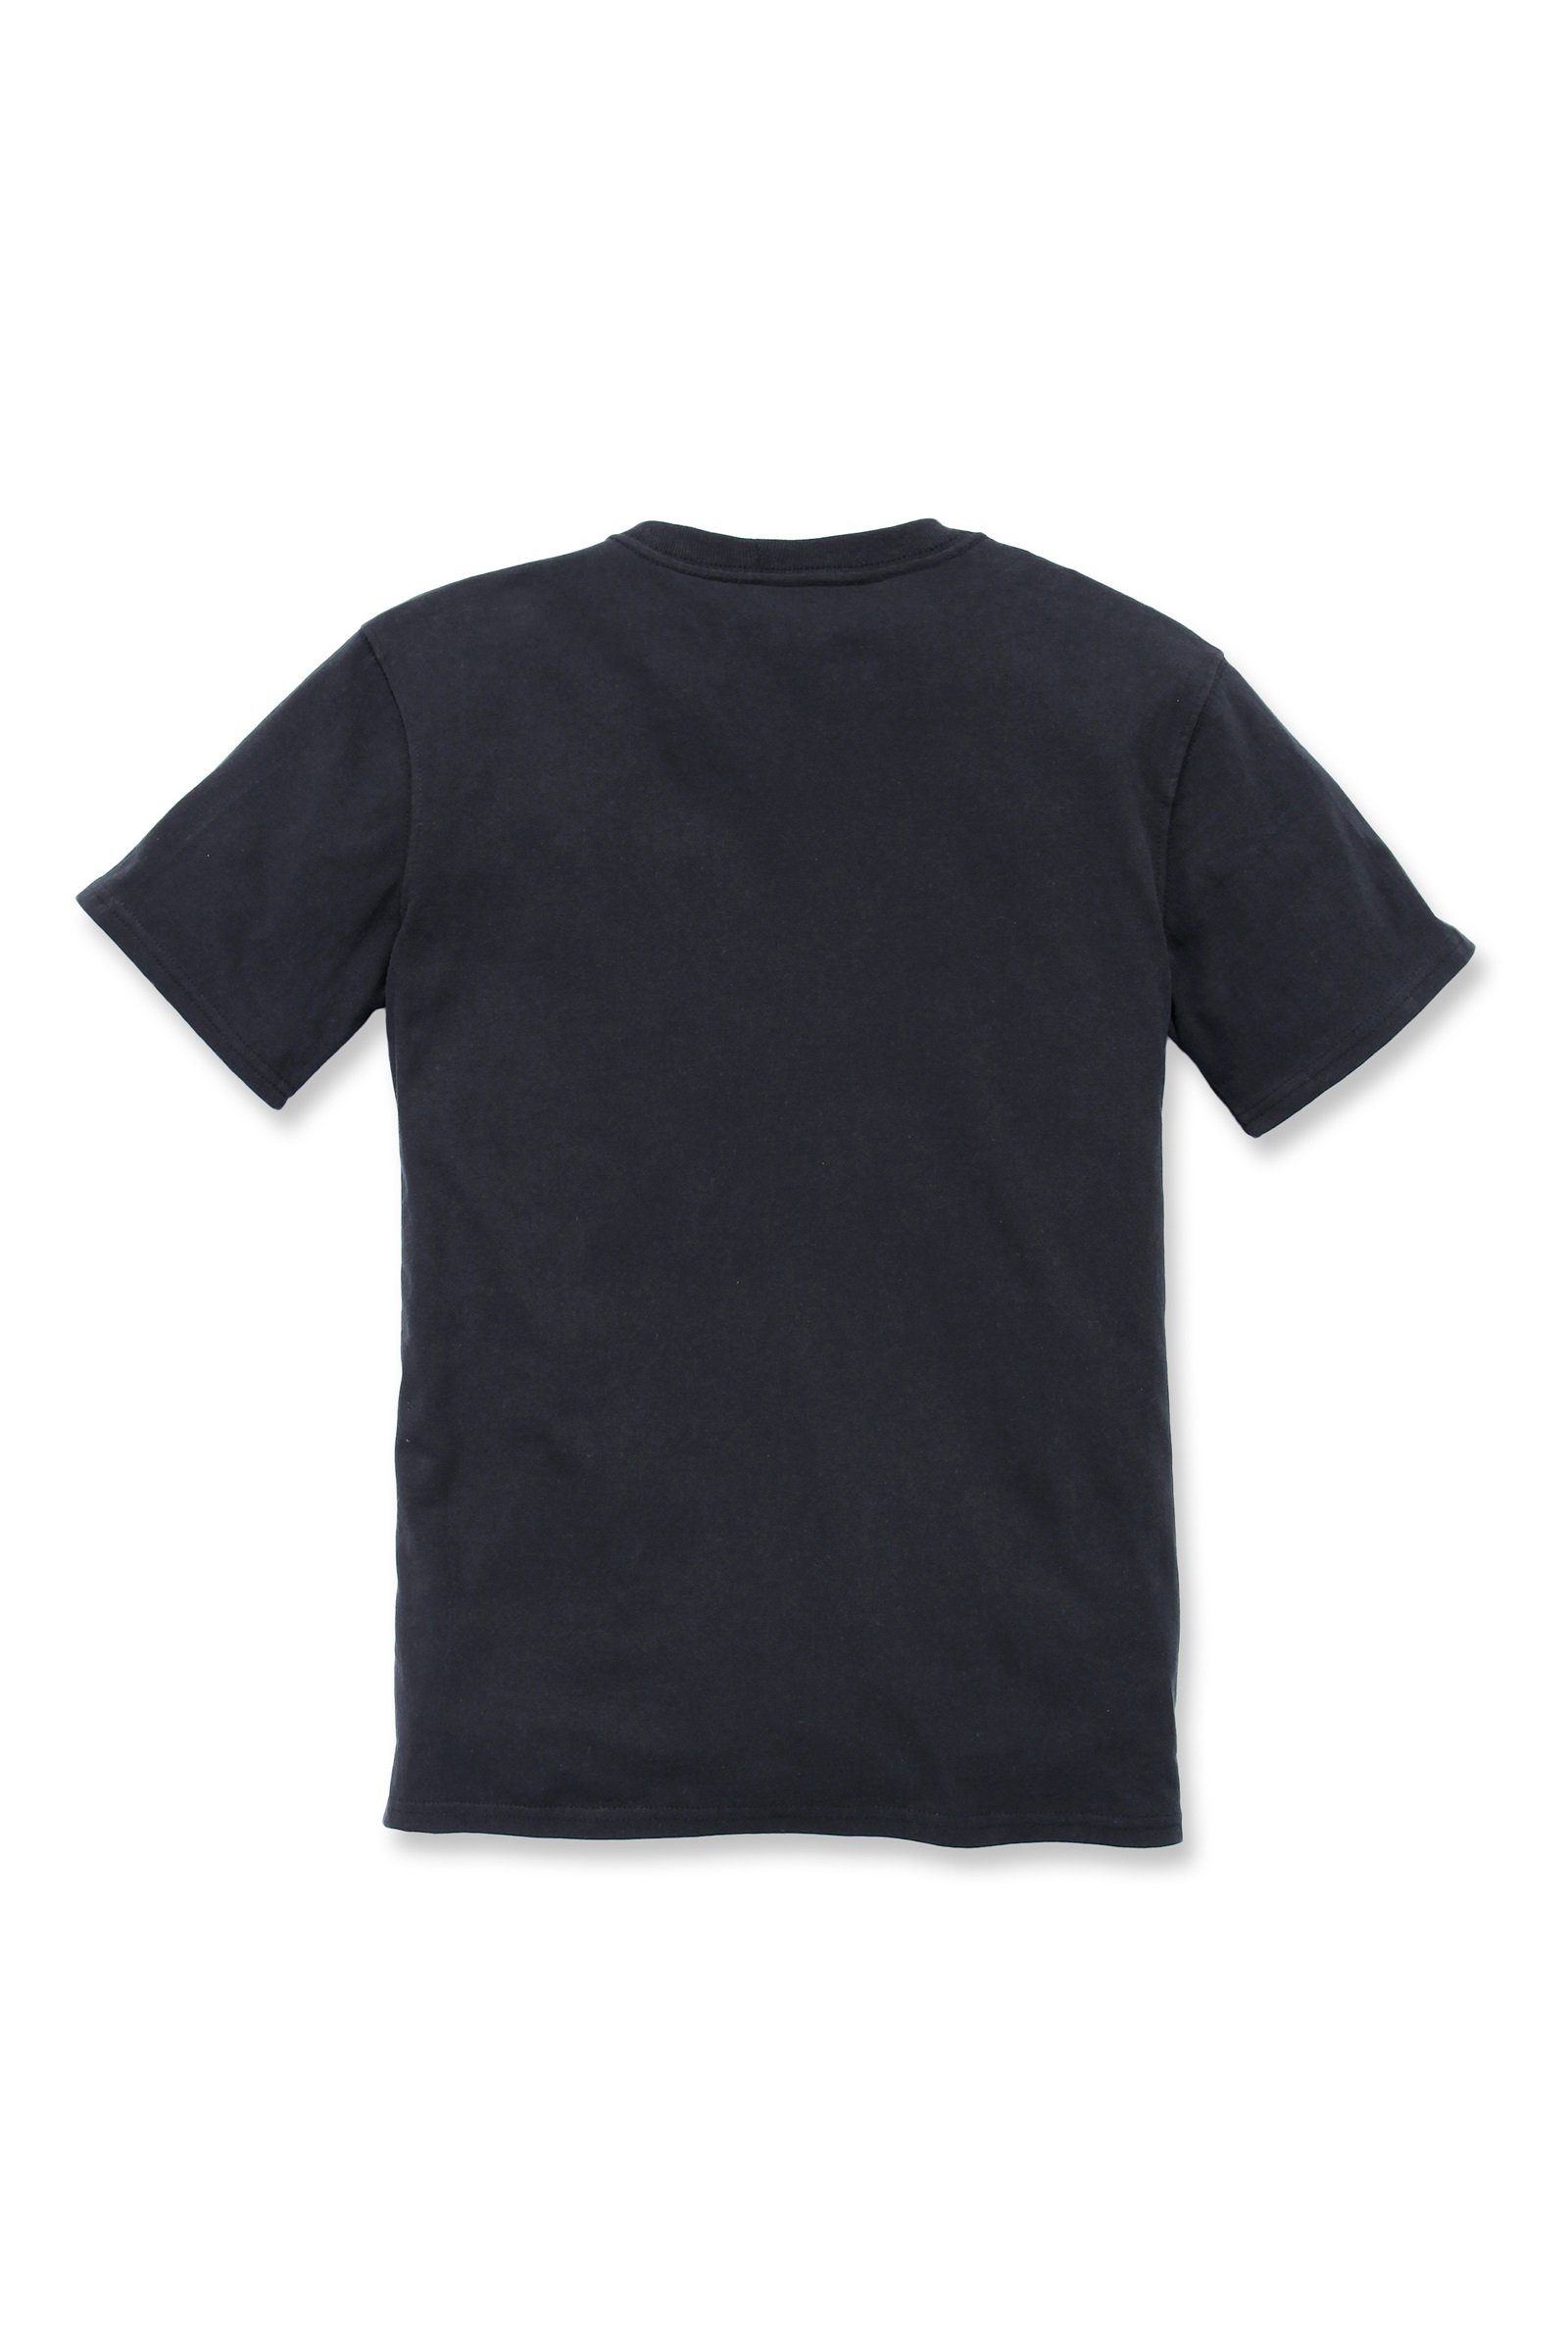 Loose Heavyweight T-Shirt Carhartt black T-Shirt Pocket Carhartt Adult Fit Damen Short-Sleeve